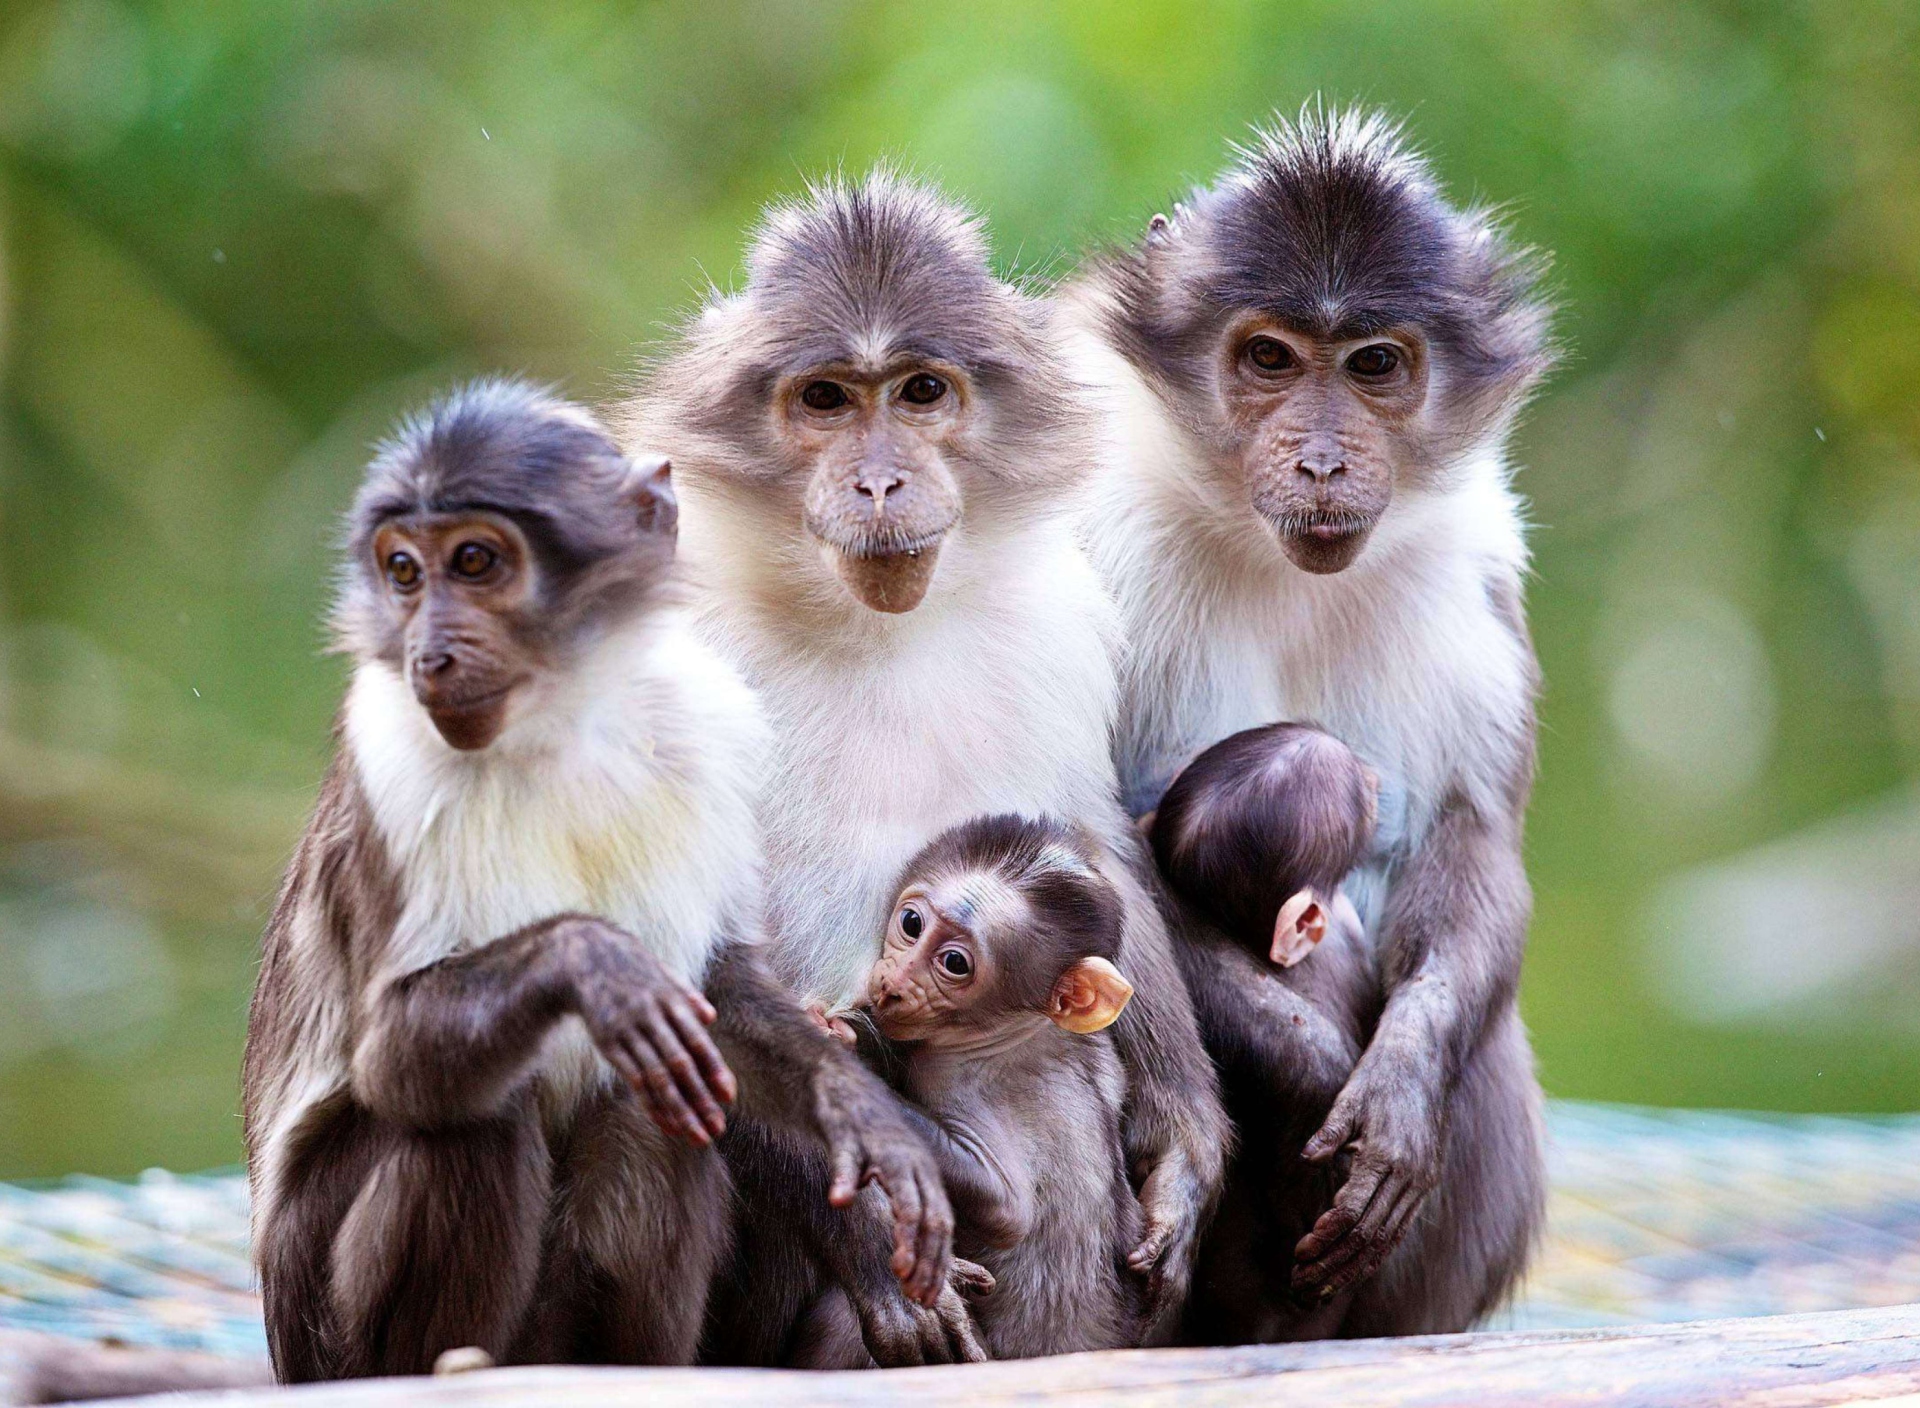 Sfondi Funny Monkeys With Their Babies 1920x1408